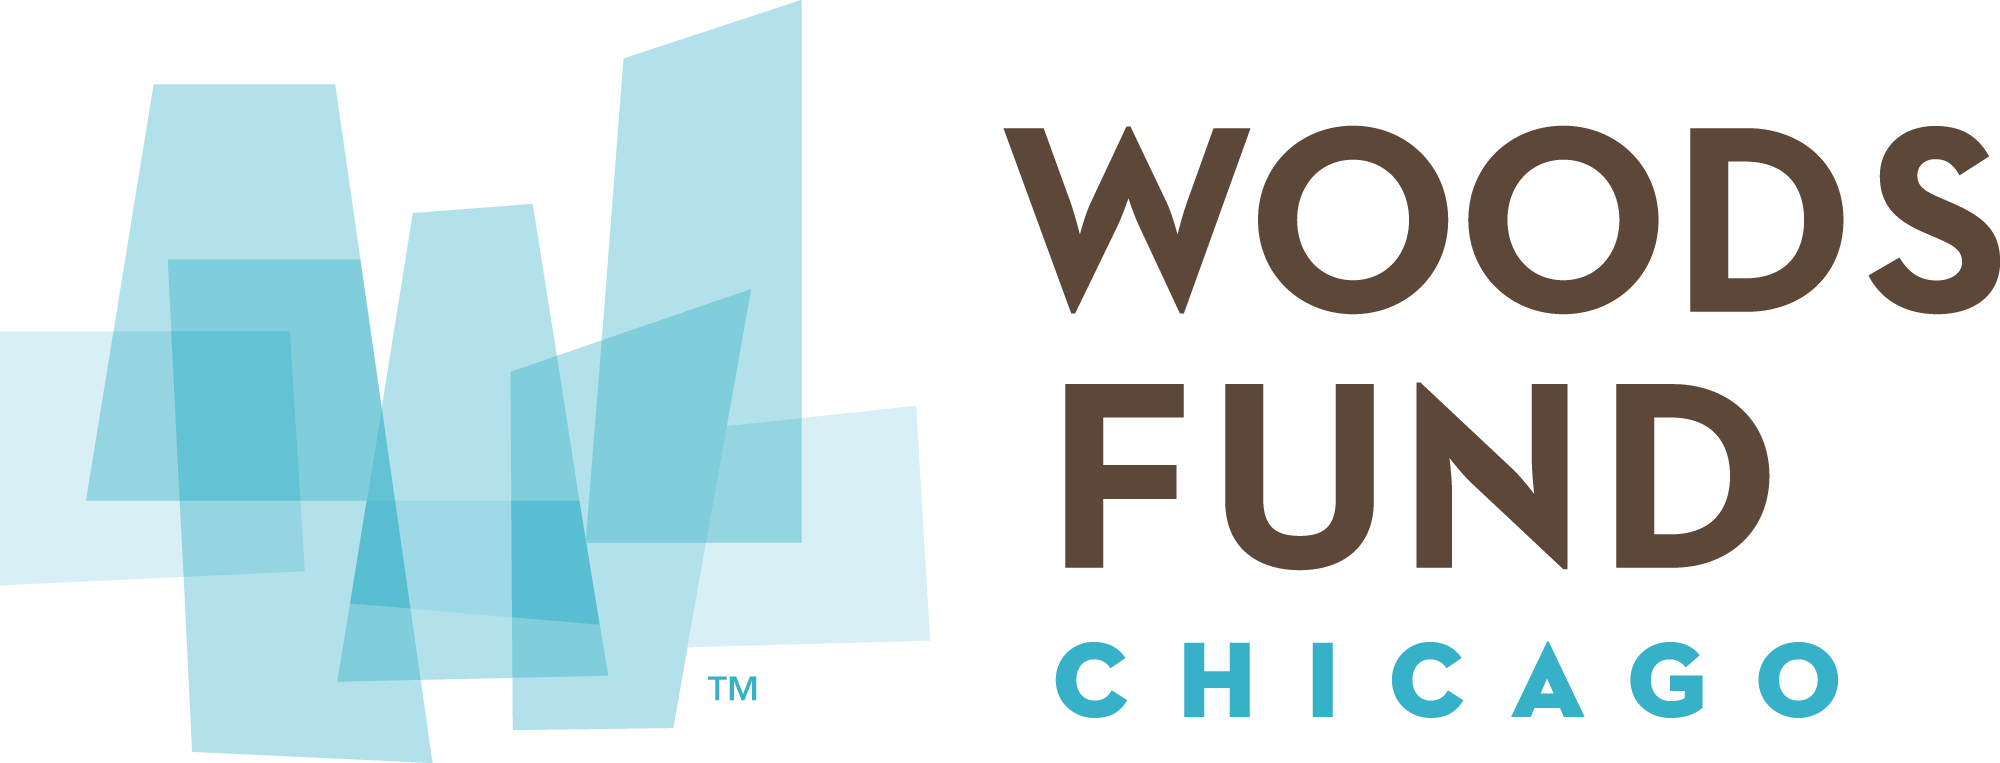 Woods Fund Chicago